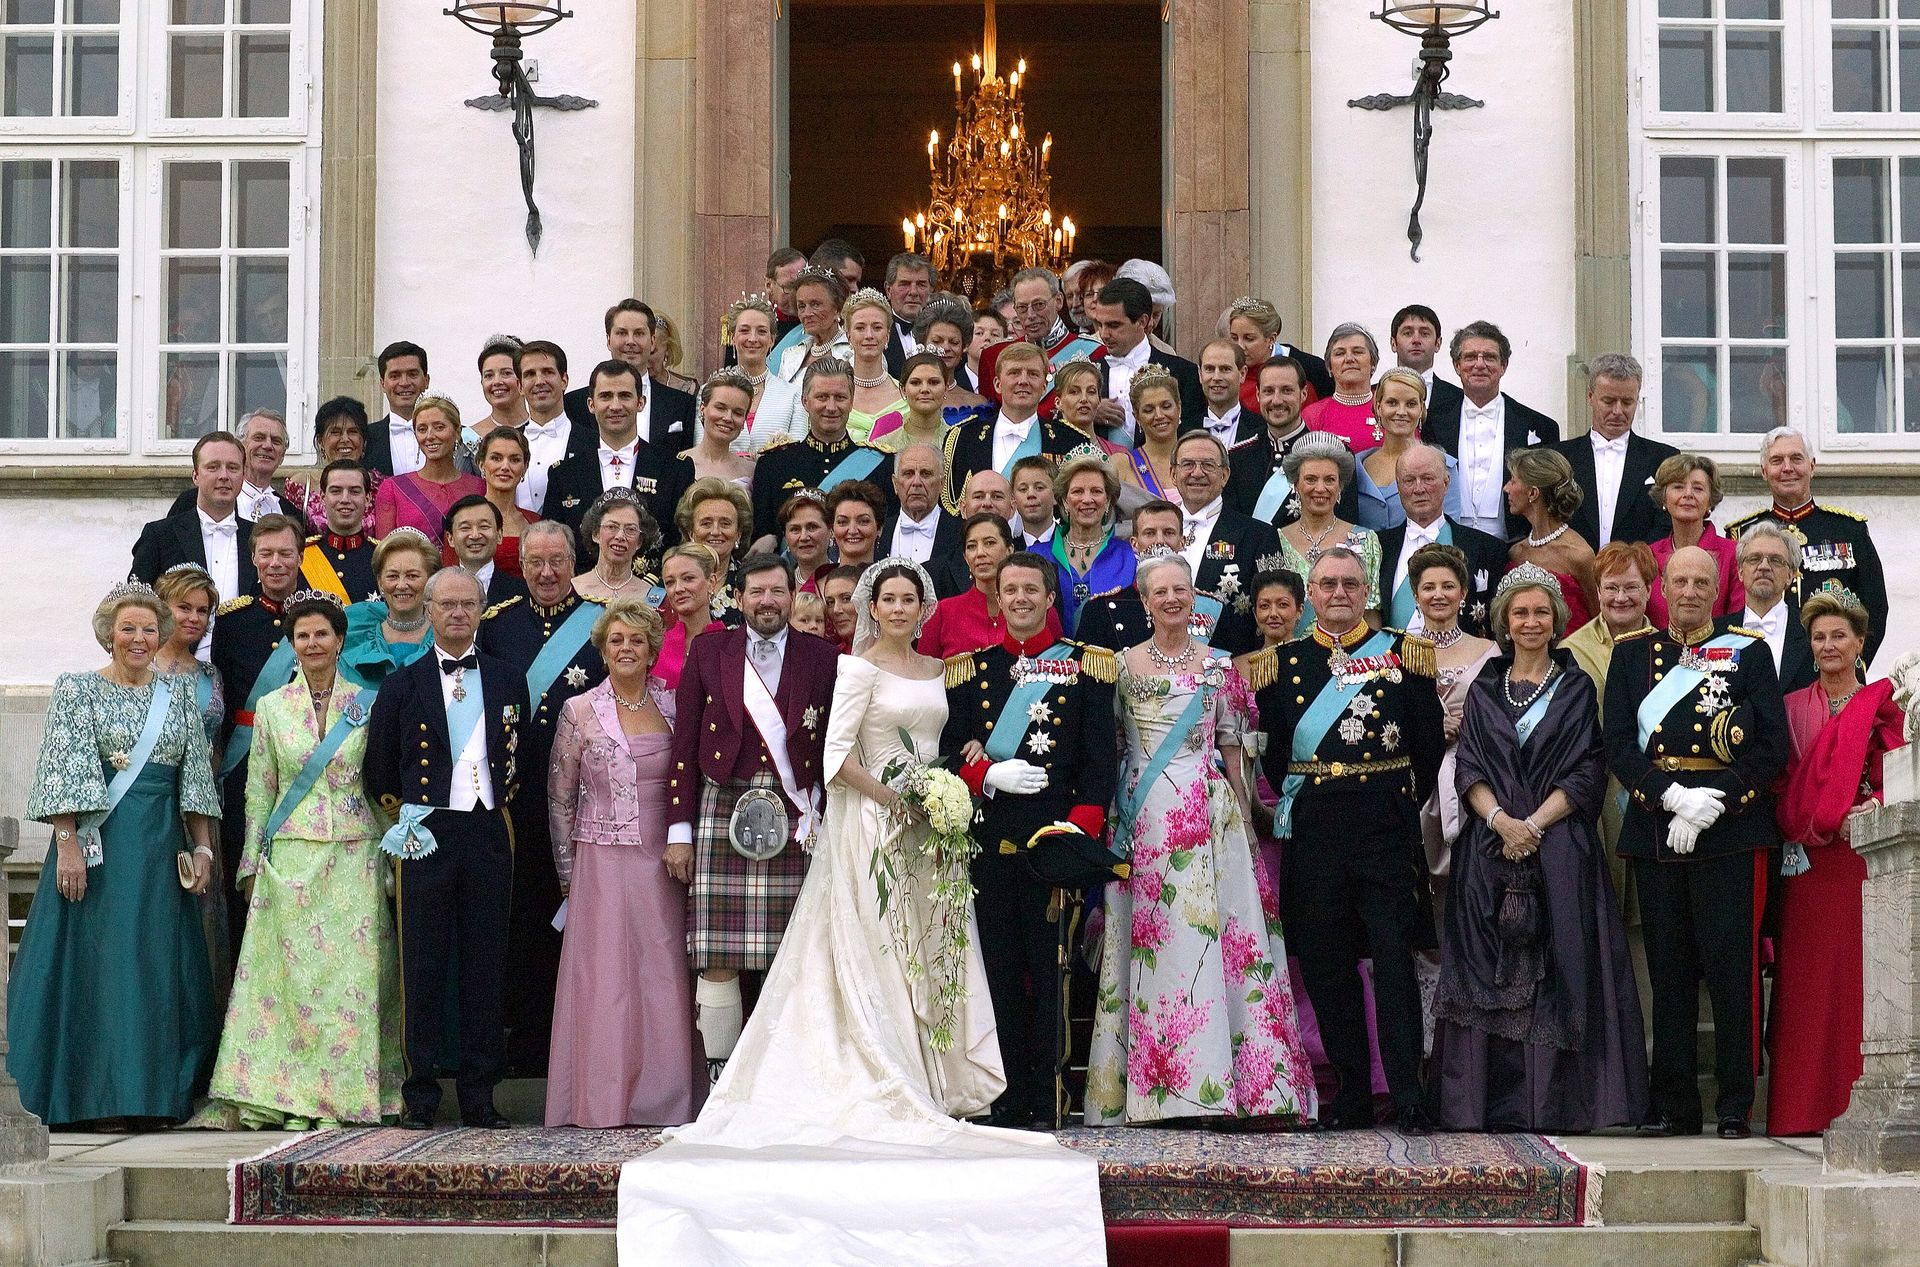 Kroonprins Frederik en kroonprinses Mary poseren met familie en gasten voor de ingang van paleis Fredensborg in 2004.